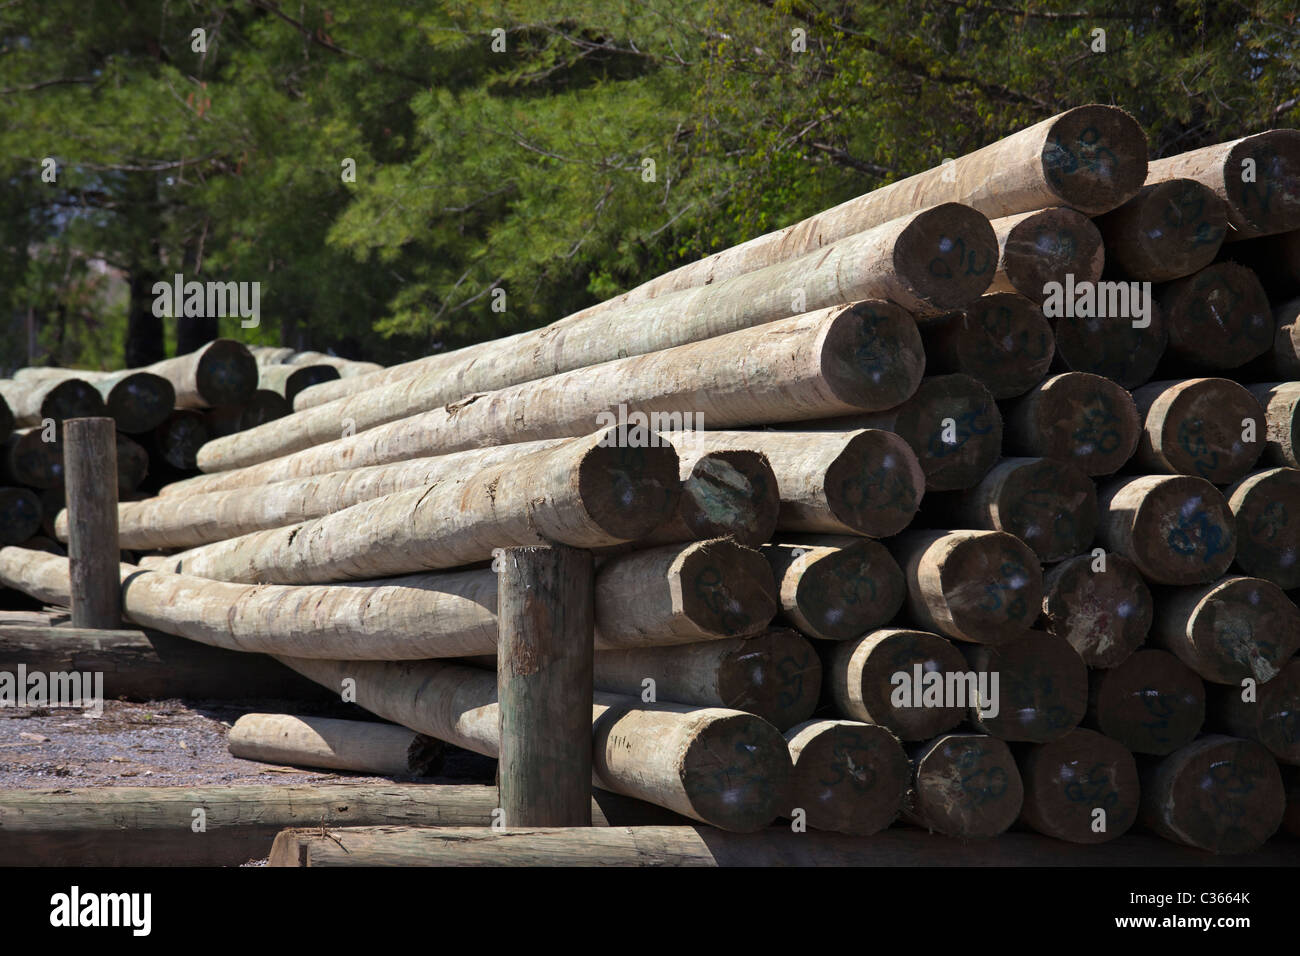 Sweetwater, Tennessee - Piiles von Strommasten in einem Wald Produkte Unternehmen. Stockfoto